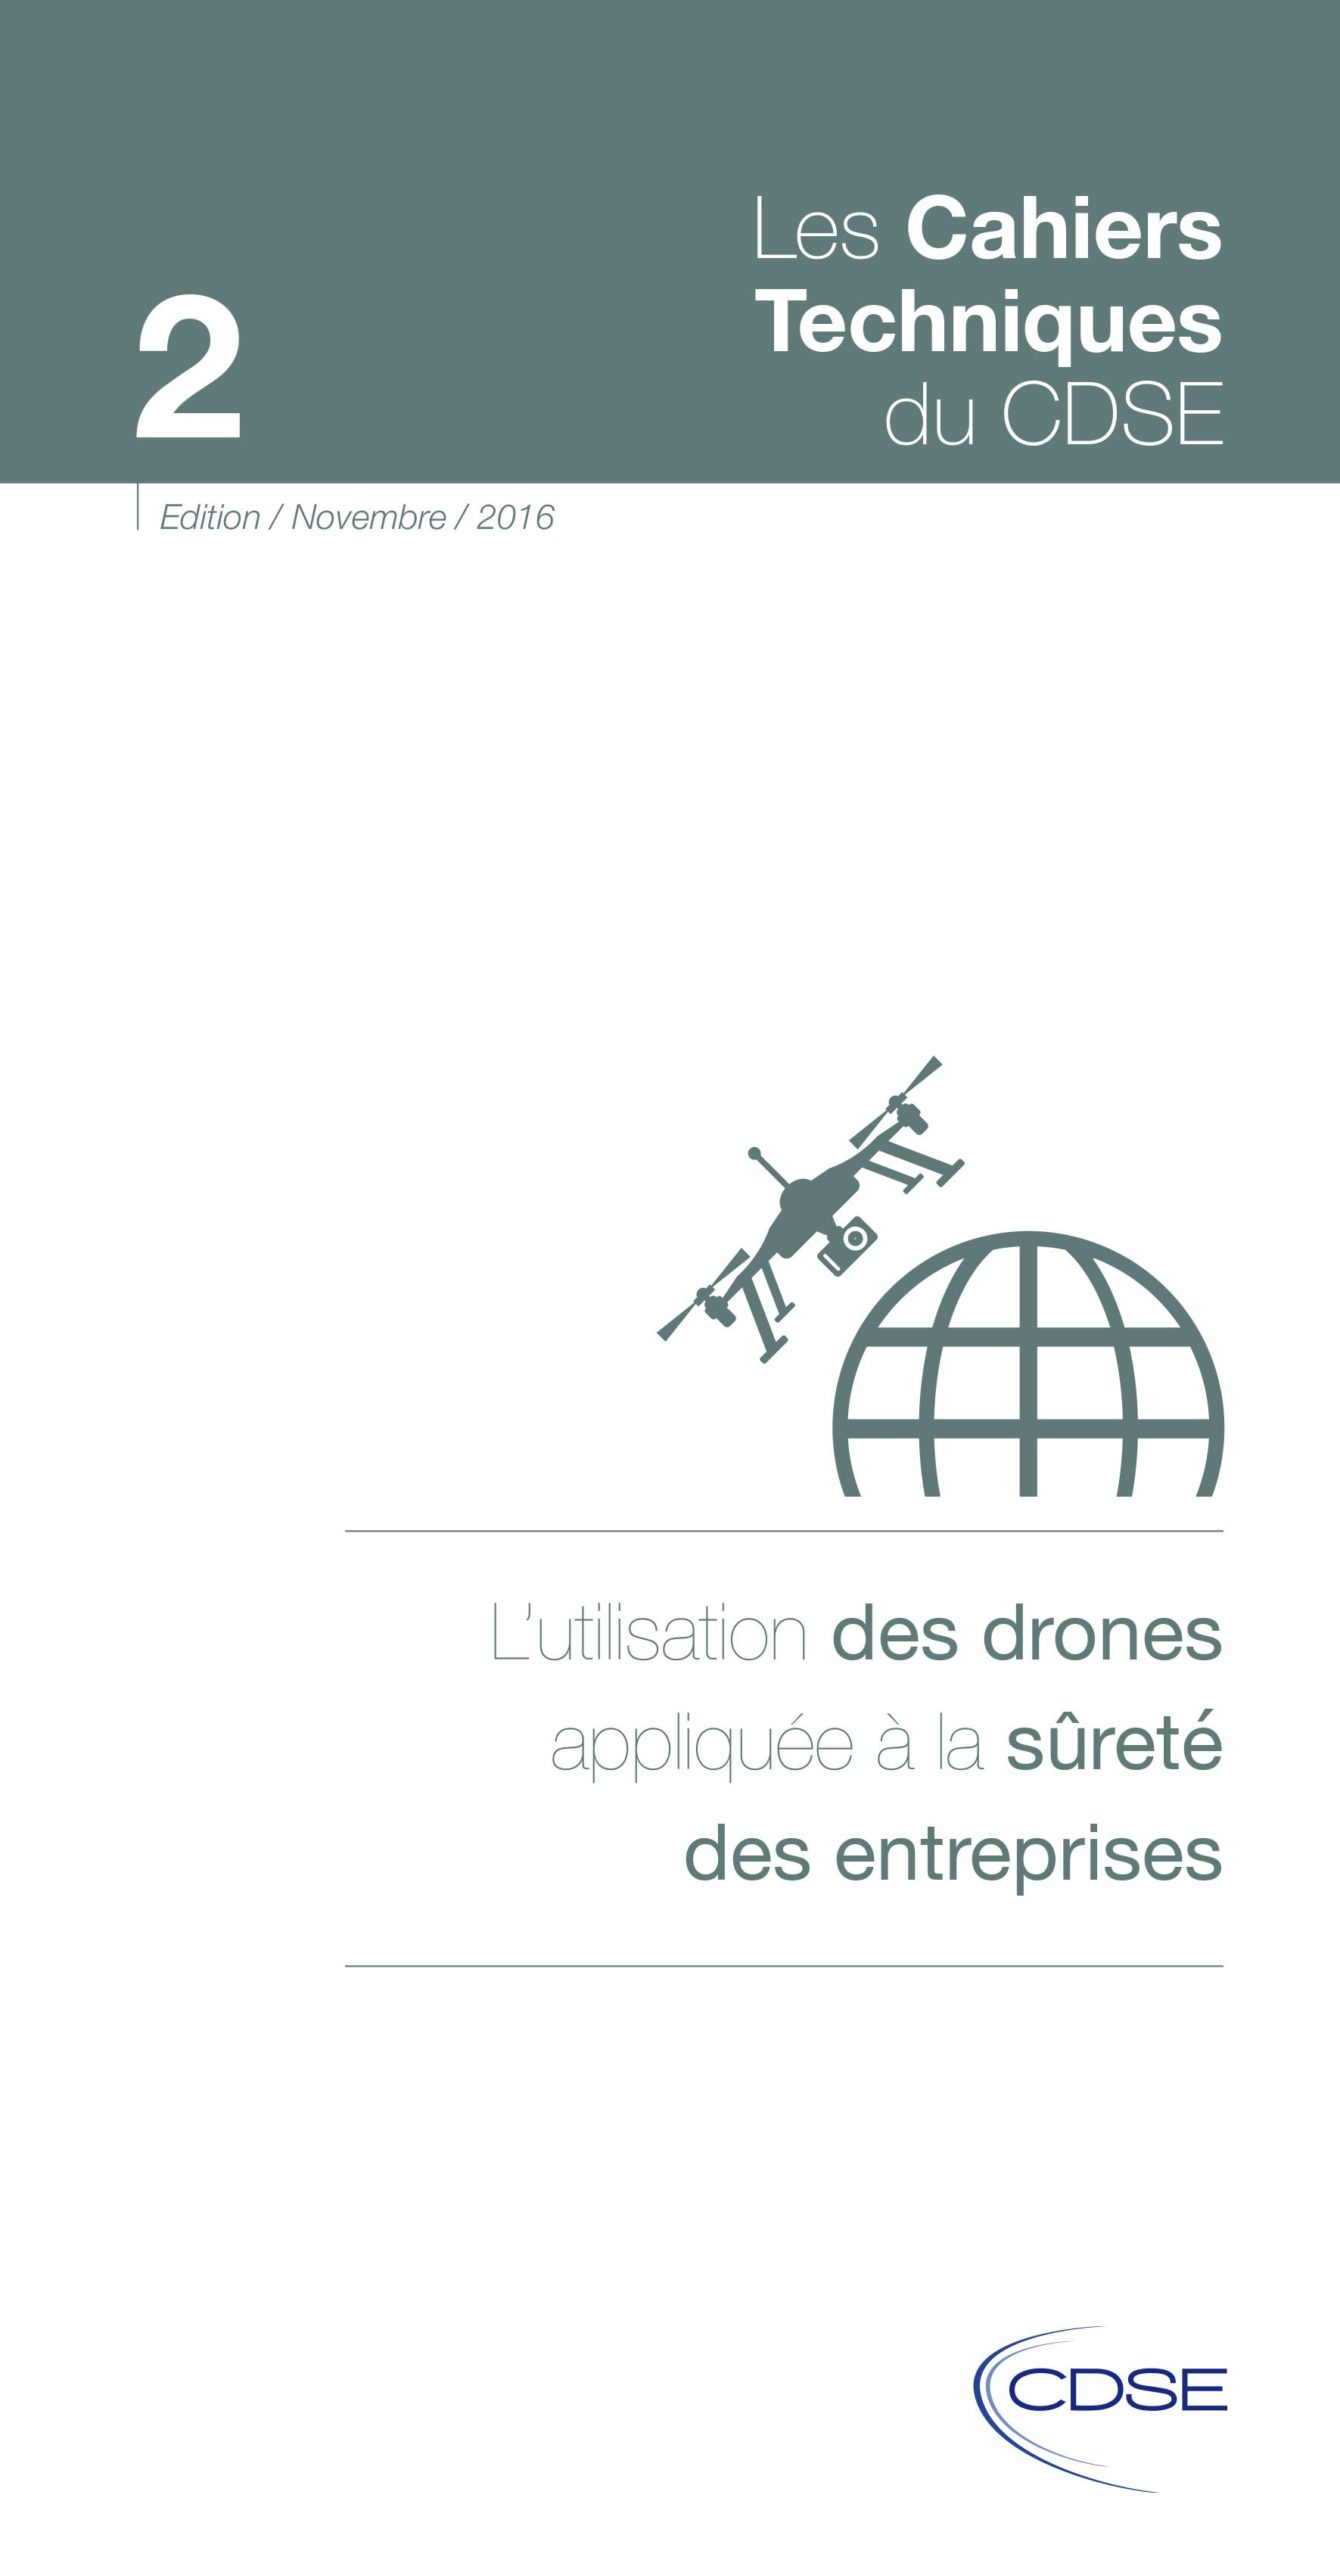 L’utilisation des drones appliquée à la sûreté des entreprises